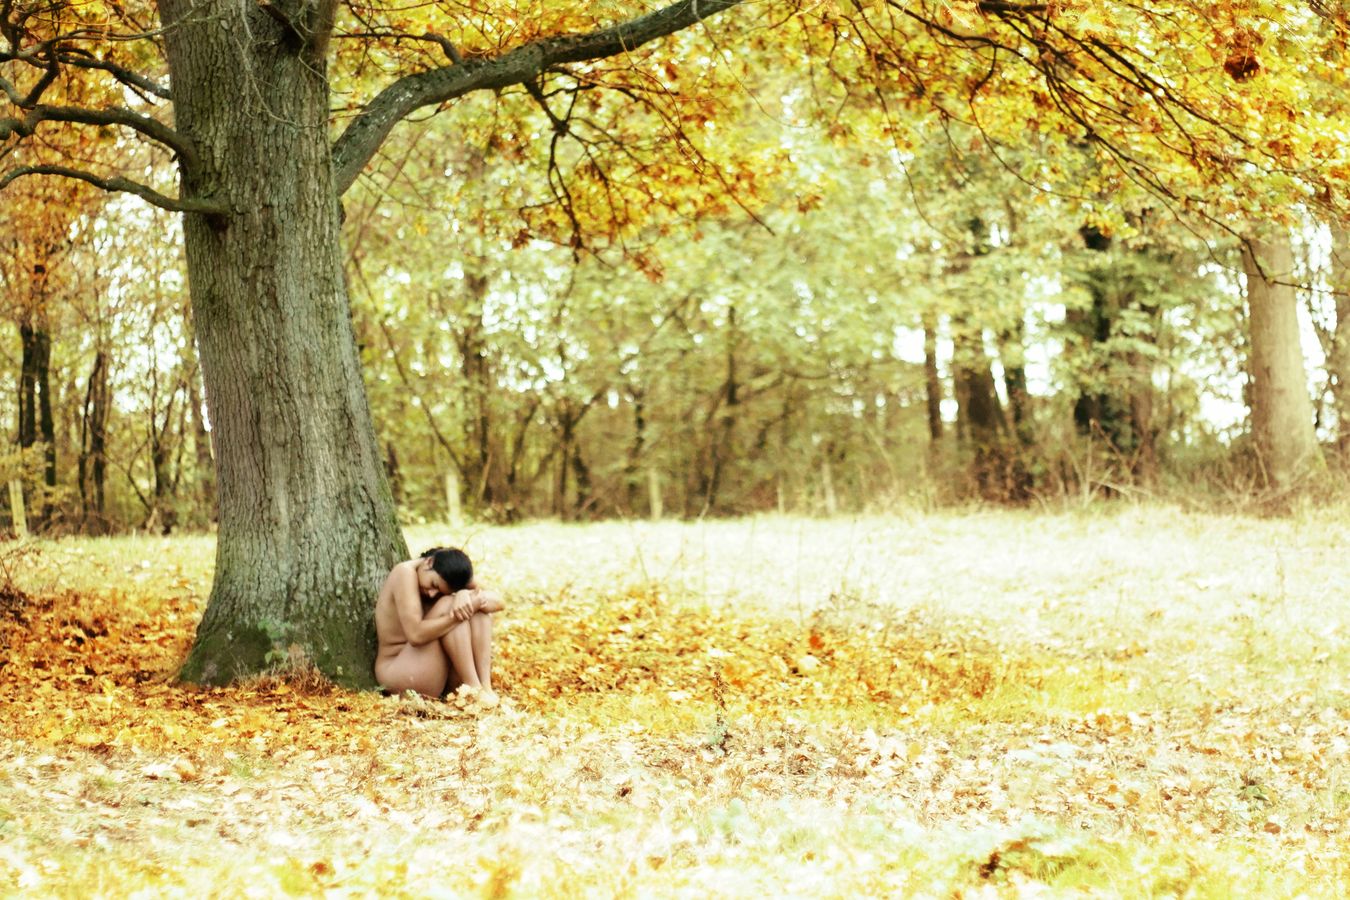 Ana, nue, se repose au pied d'un arbre en automne et la nature vient l'enlacer tendrement et paisiblement. L'arbre est entouré de couleurs flamboyantes.